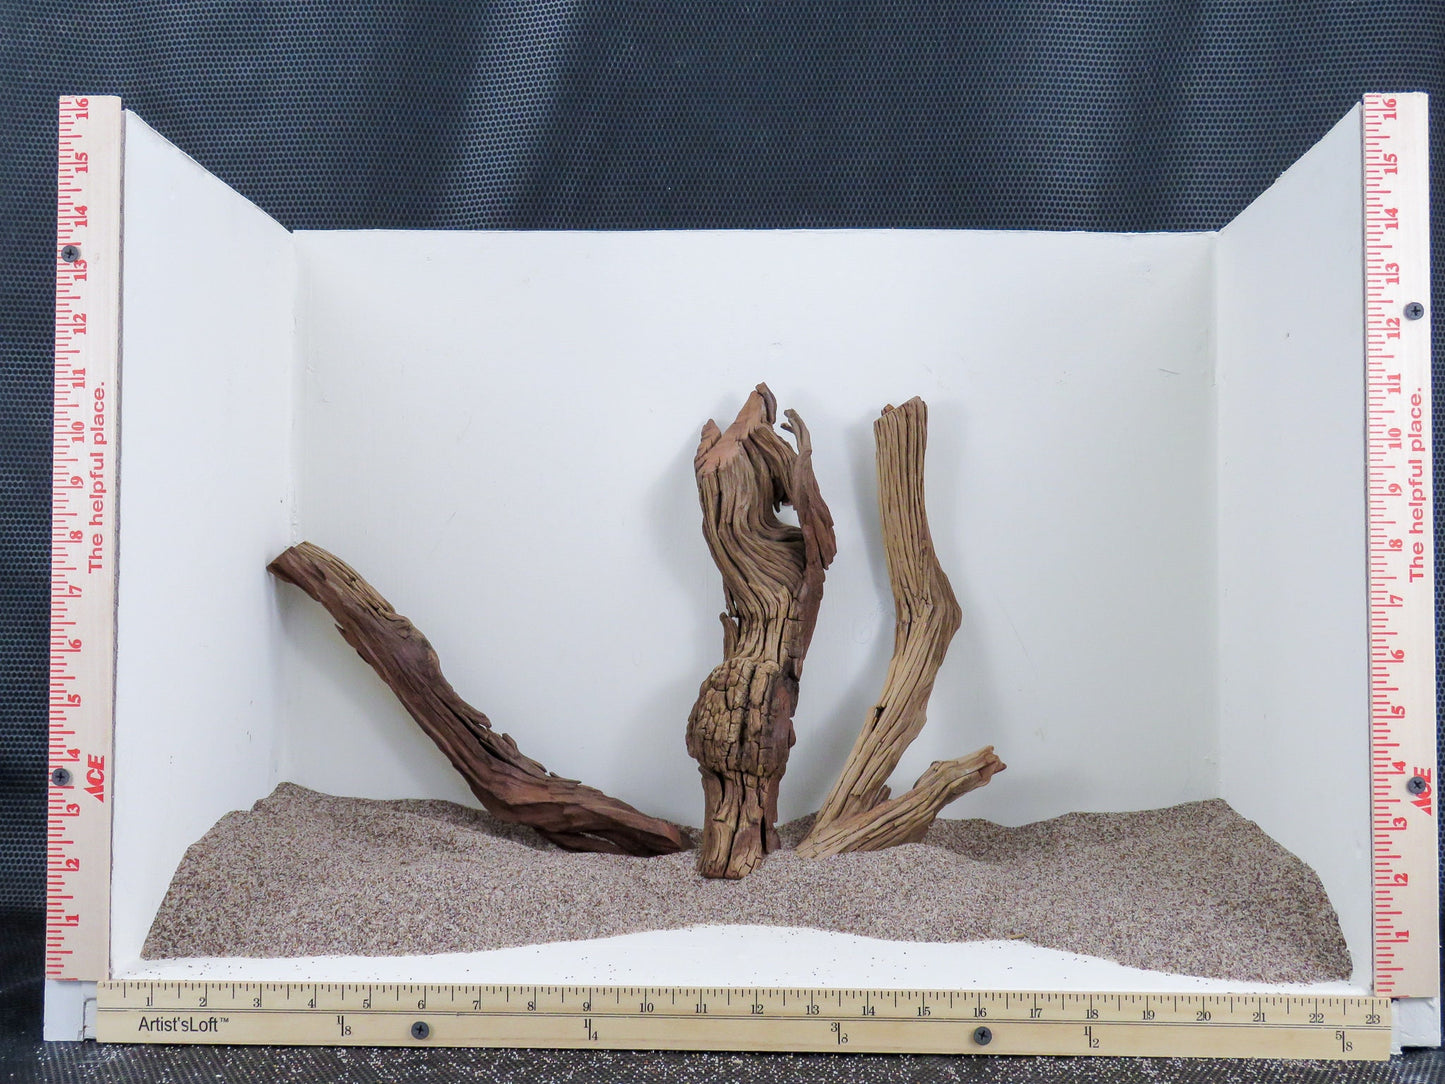 Manzanita Branch/Root Driftwood, (3pc set), Driftwood Art, High-Quality Arizona Manzanita Driftwood, Driftwood Sculpture, Driftwood Decor